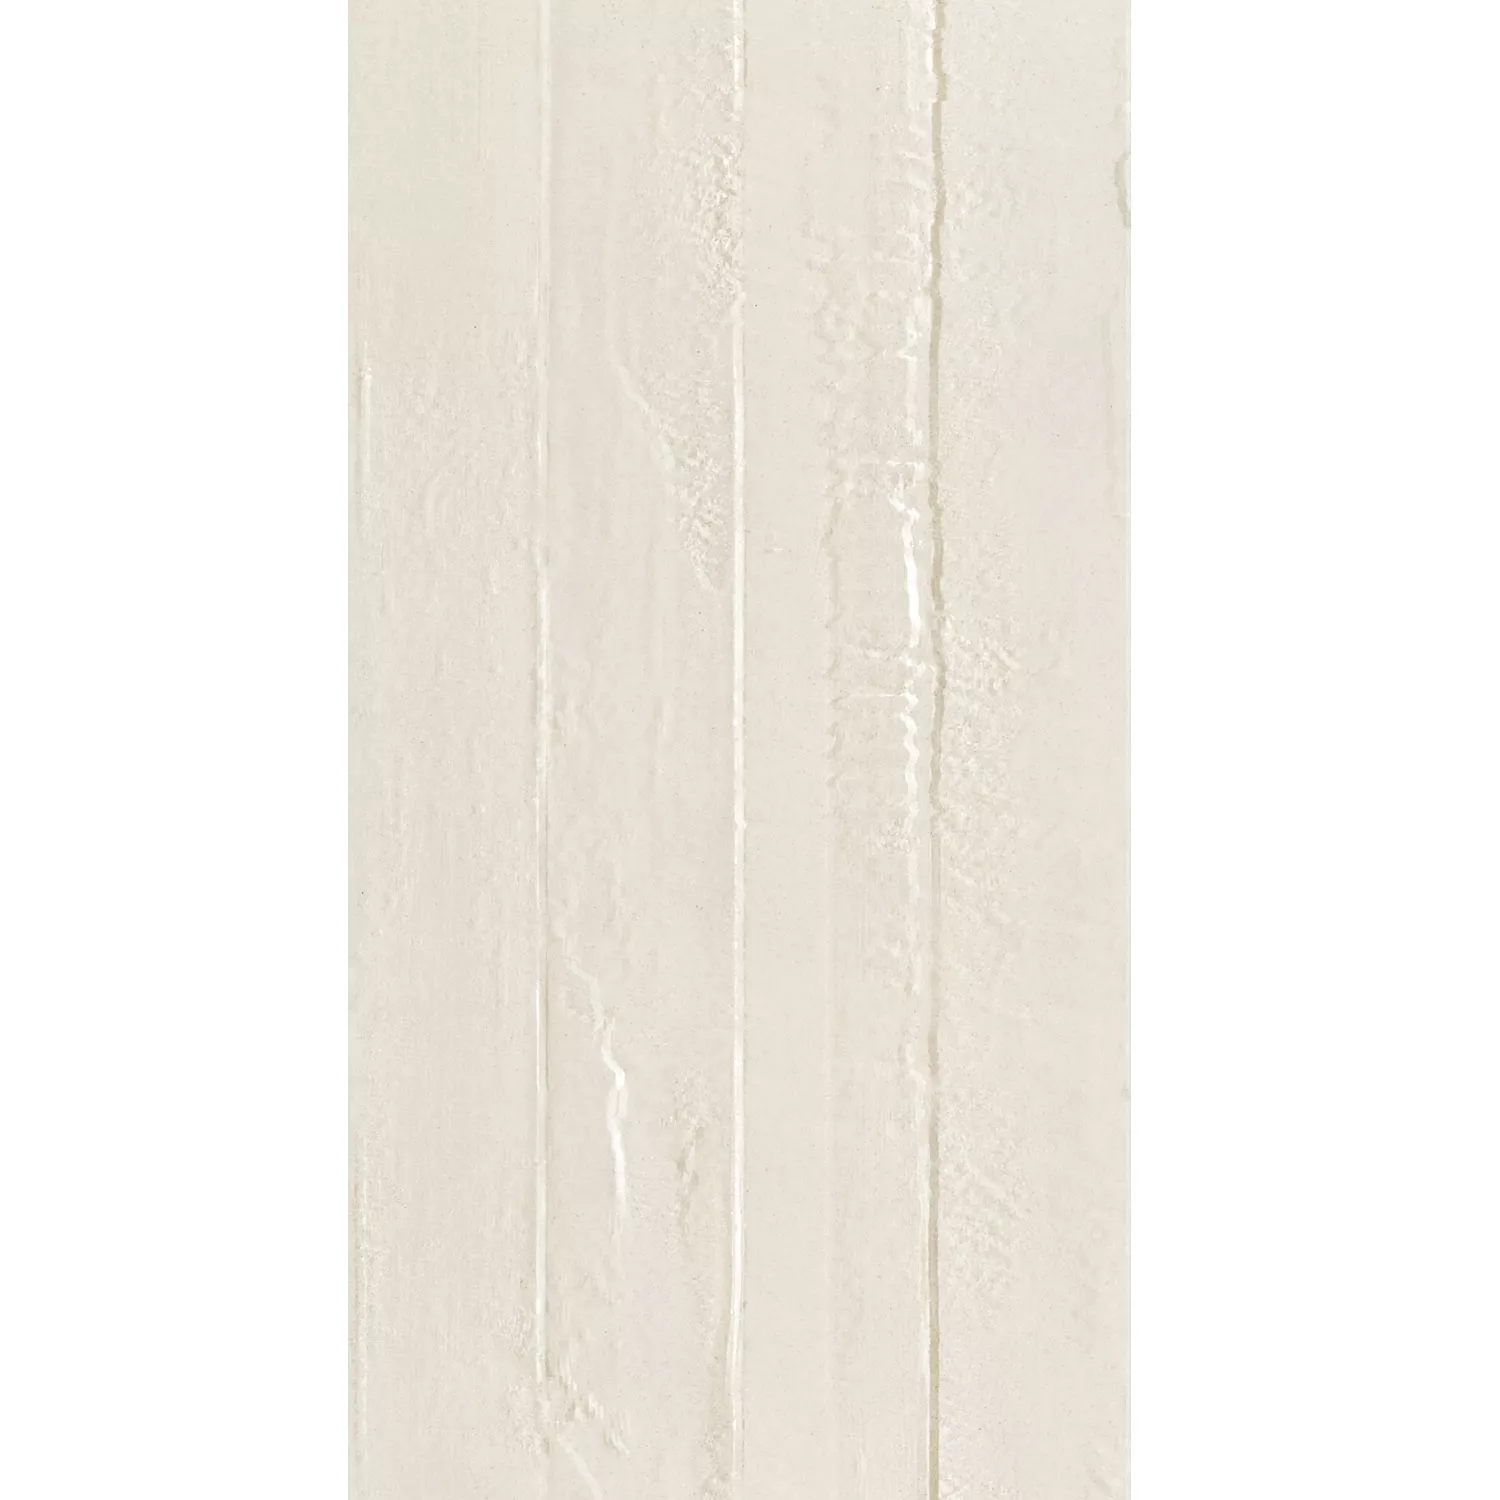 Płytki Podłogowe Kamień Optyka Lobetal Kość Słoniowa 45x90cm